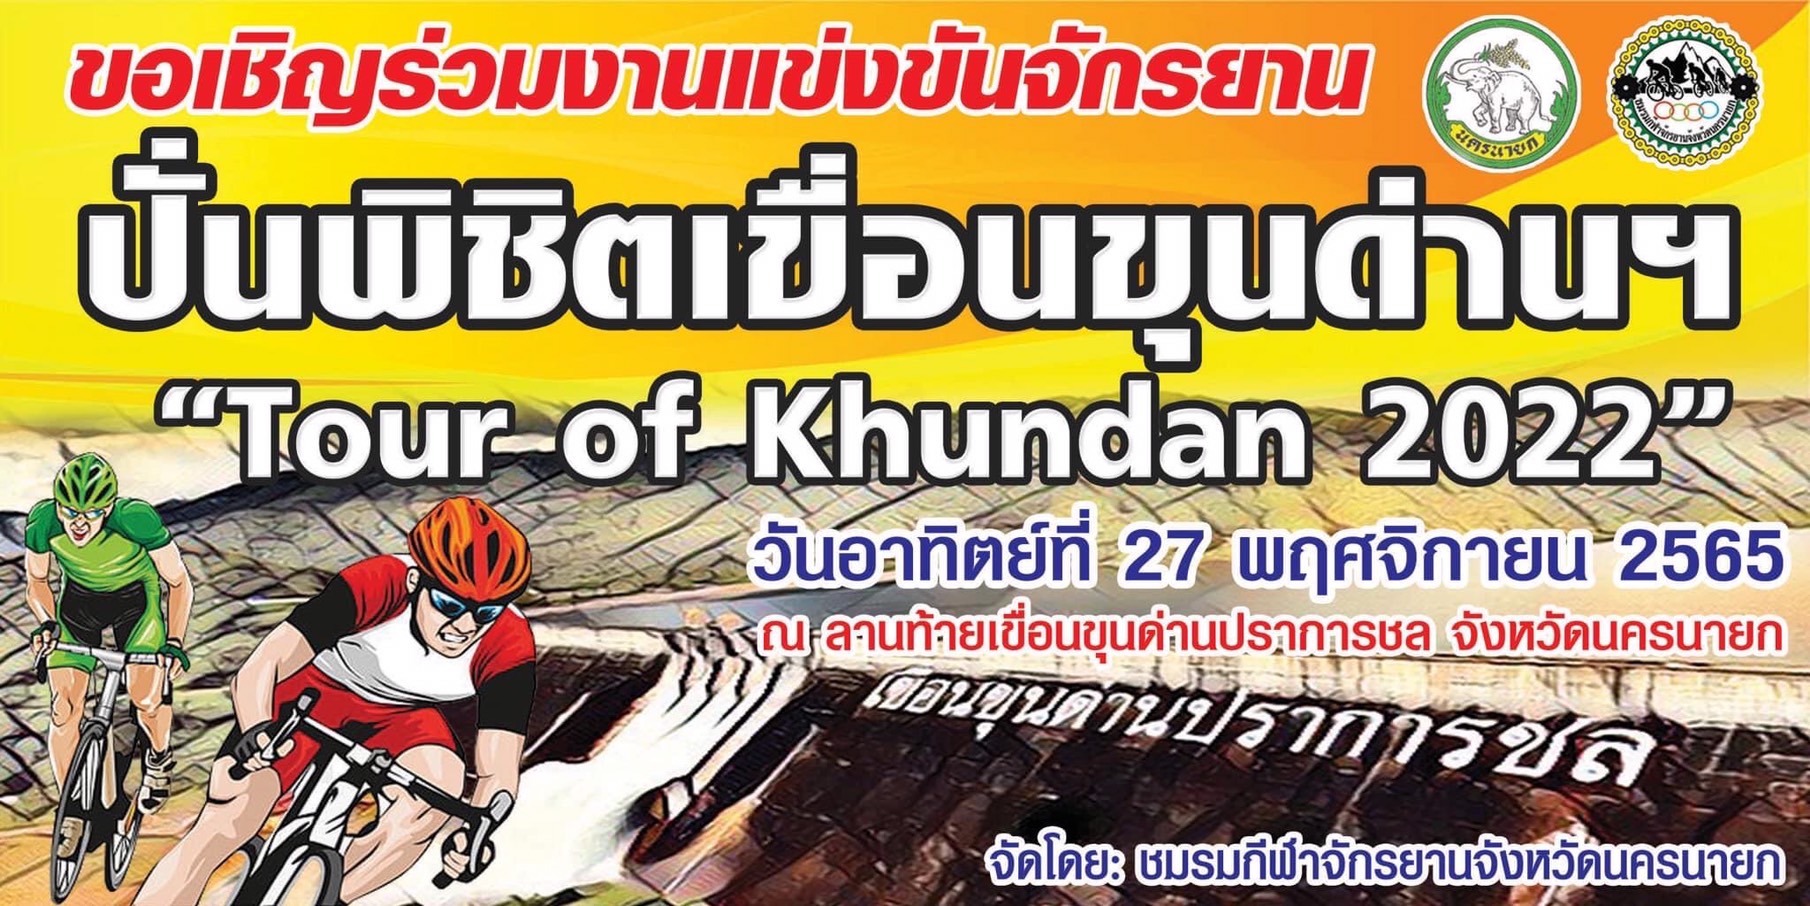 27 พ.ย. 2565 กิจกรรม การแข่งขันจักรยาน ปั่นพิชิตเขื่อนขุนด่านปราการชล ครั้งที่ 1  “Tour of Khundan 2022”